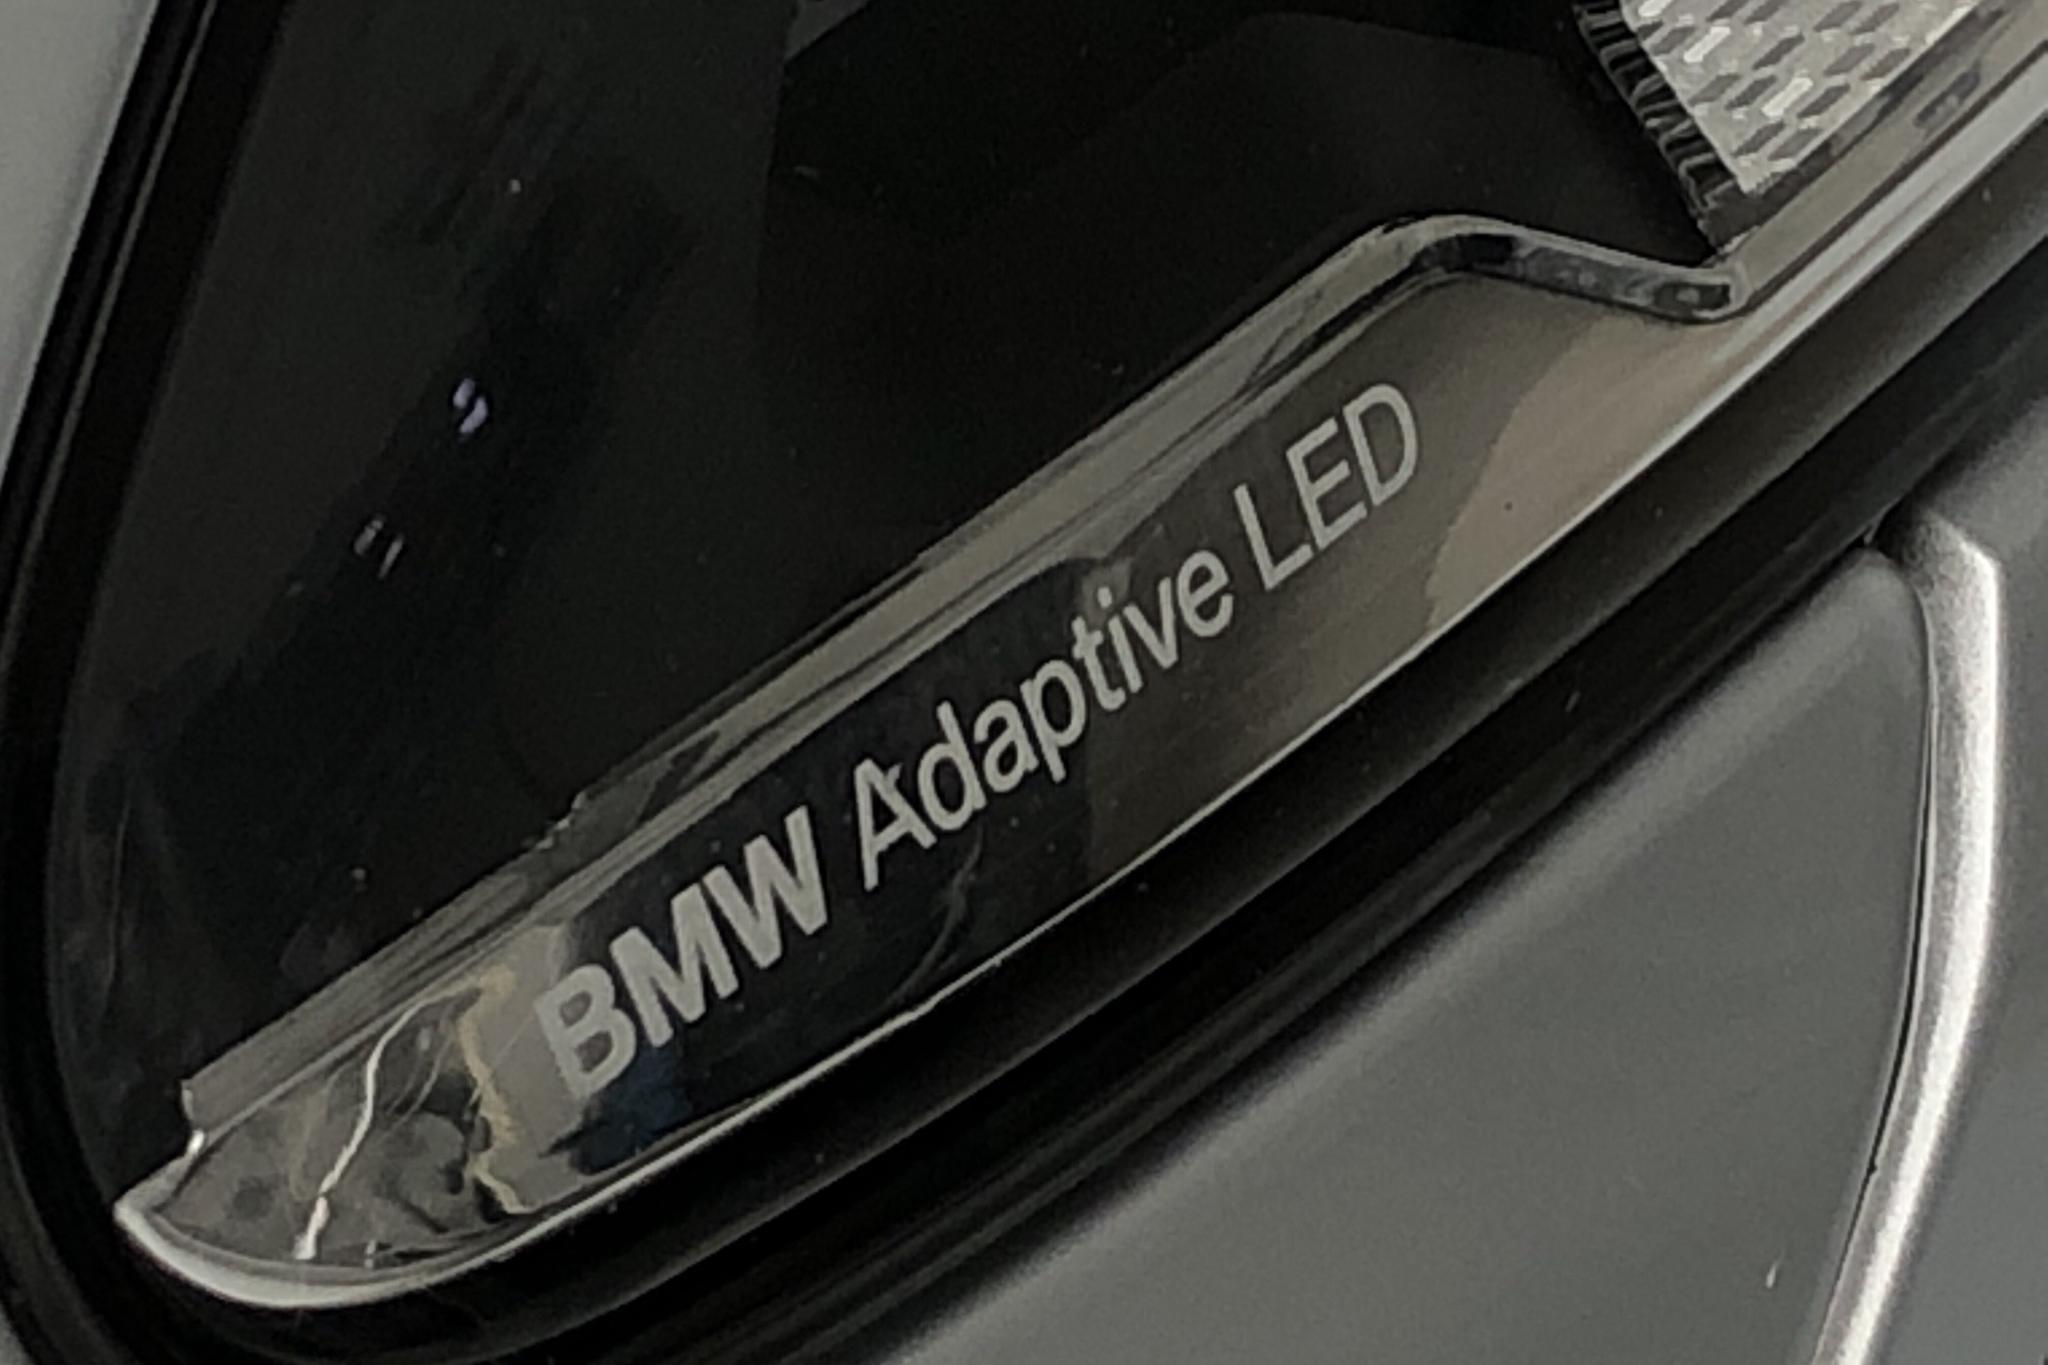 BMW 535d xDrive Touring, F11 (313hk) - 150 670 km - Automatic - silver - 2016